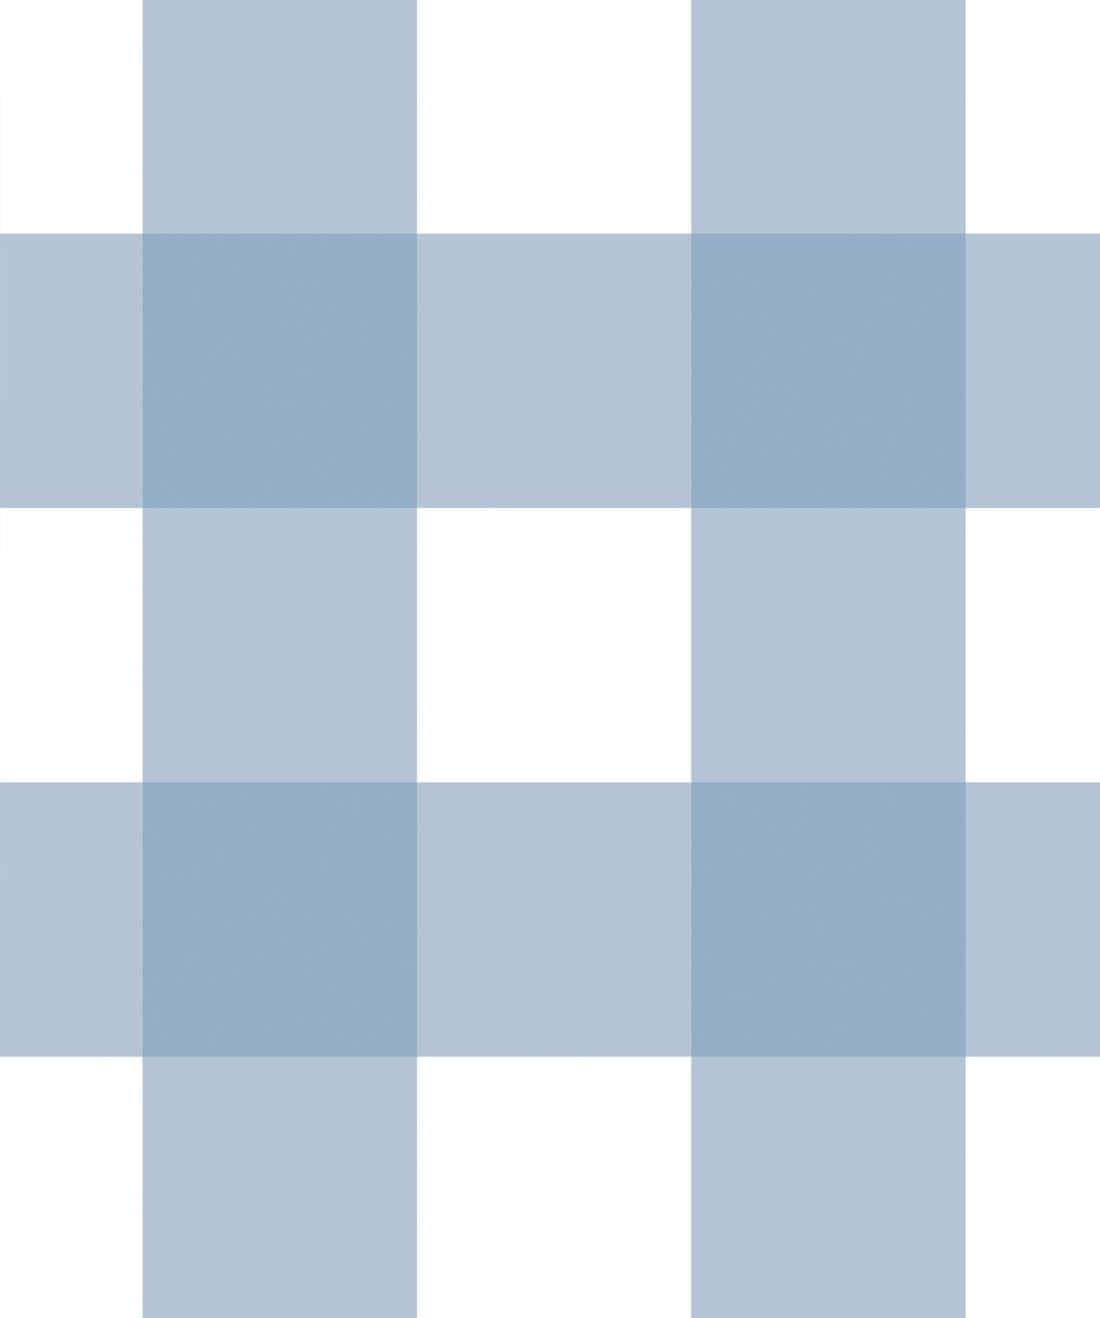 Blaugestreiftes Hintergrundbild Mit Vertikalen Und Horizontalen Linien.